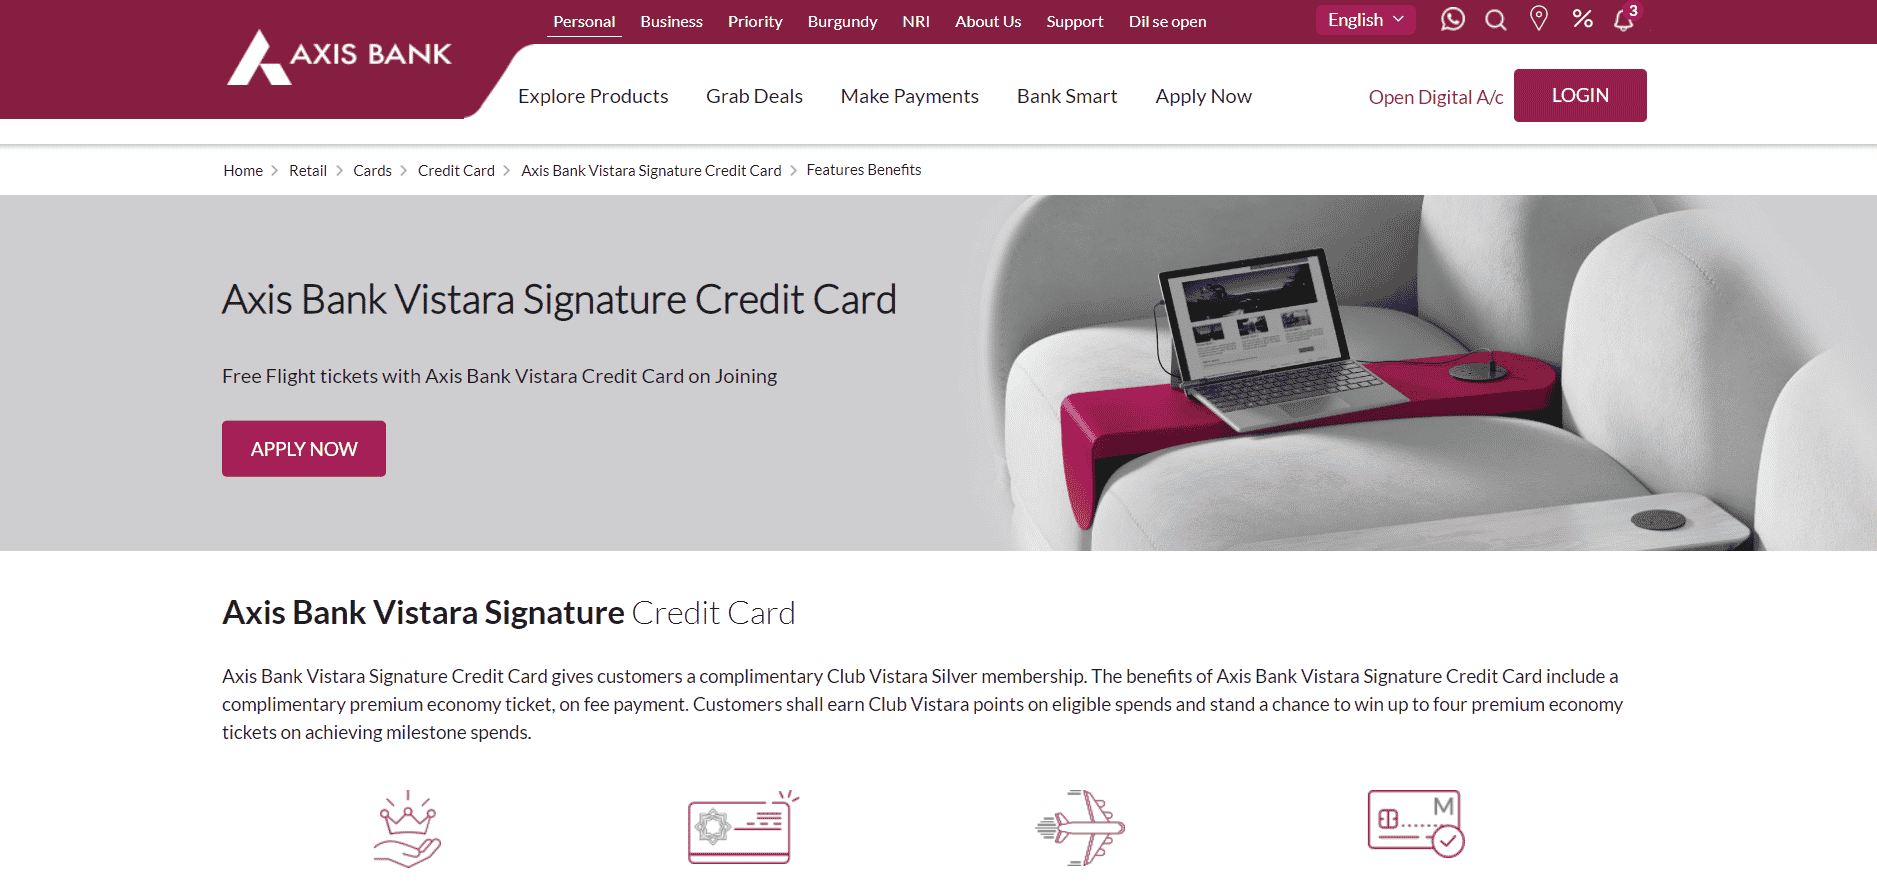 Axis bank Vistara Signature Credit Card